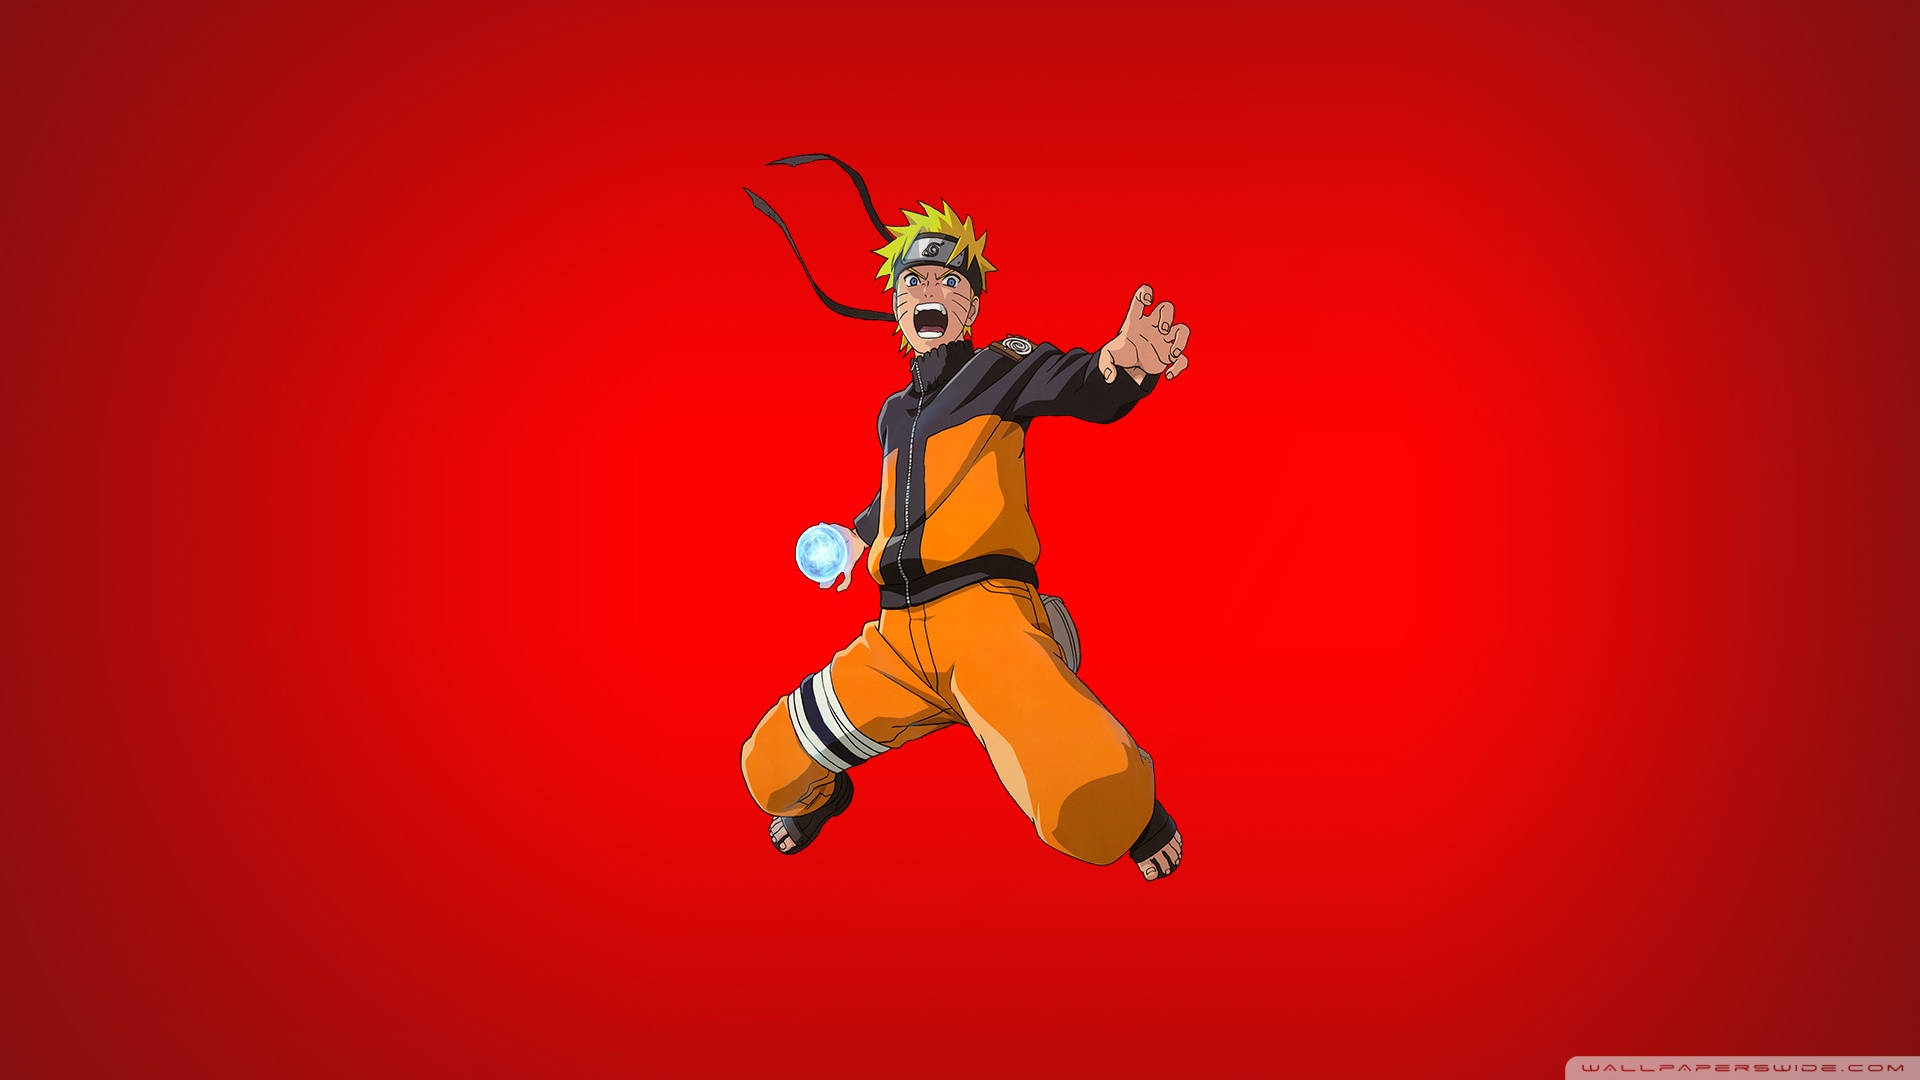 Hình nền Naruto HD hấp dẫn và sắc nét đang chờ đón bạn! Hãy tải xuống bộ sưu tập hình nền Naruto phong cách và cập nhật cho thiết bị của mình ngay bây giờ!